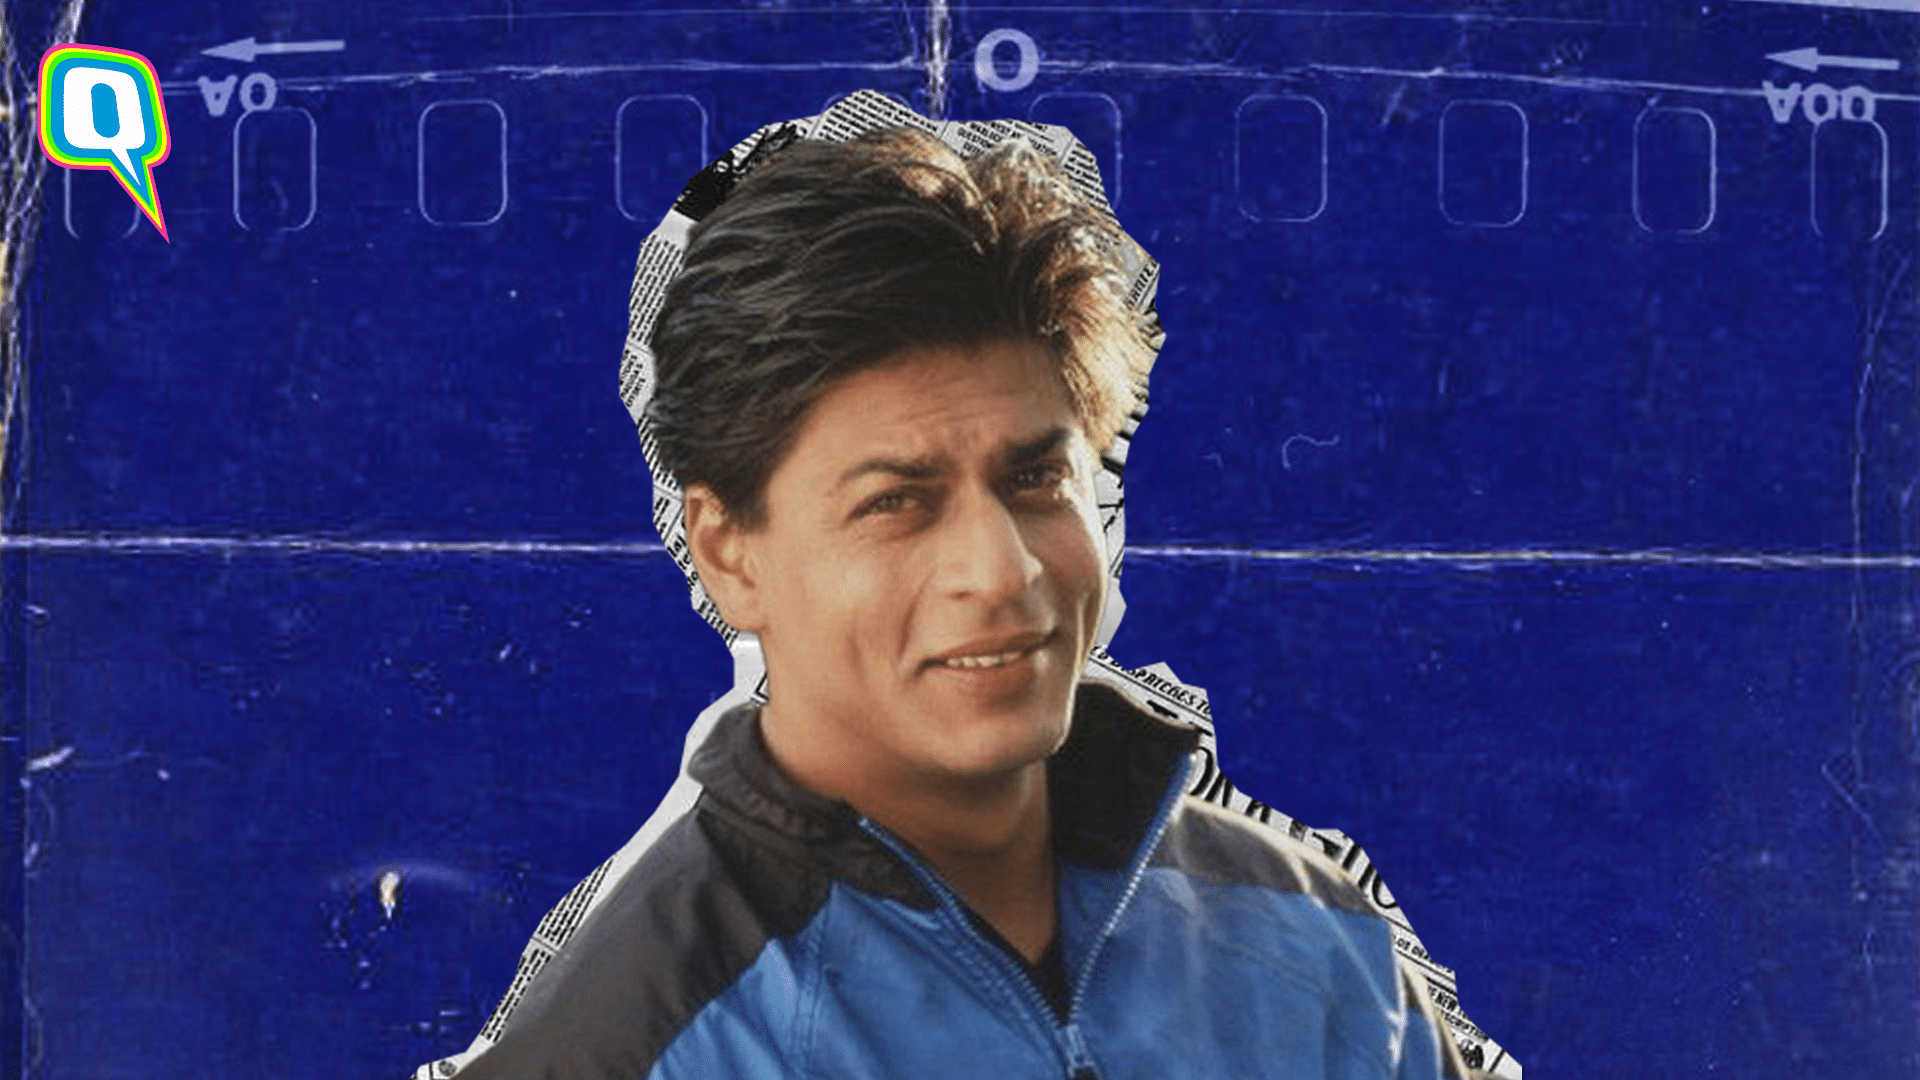 <div class="paragraphs"><p>Happy birthday Shah Rukh Khan.</p></div>